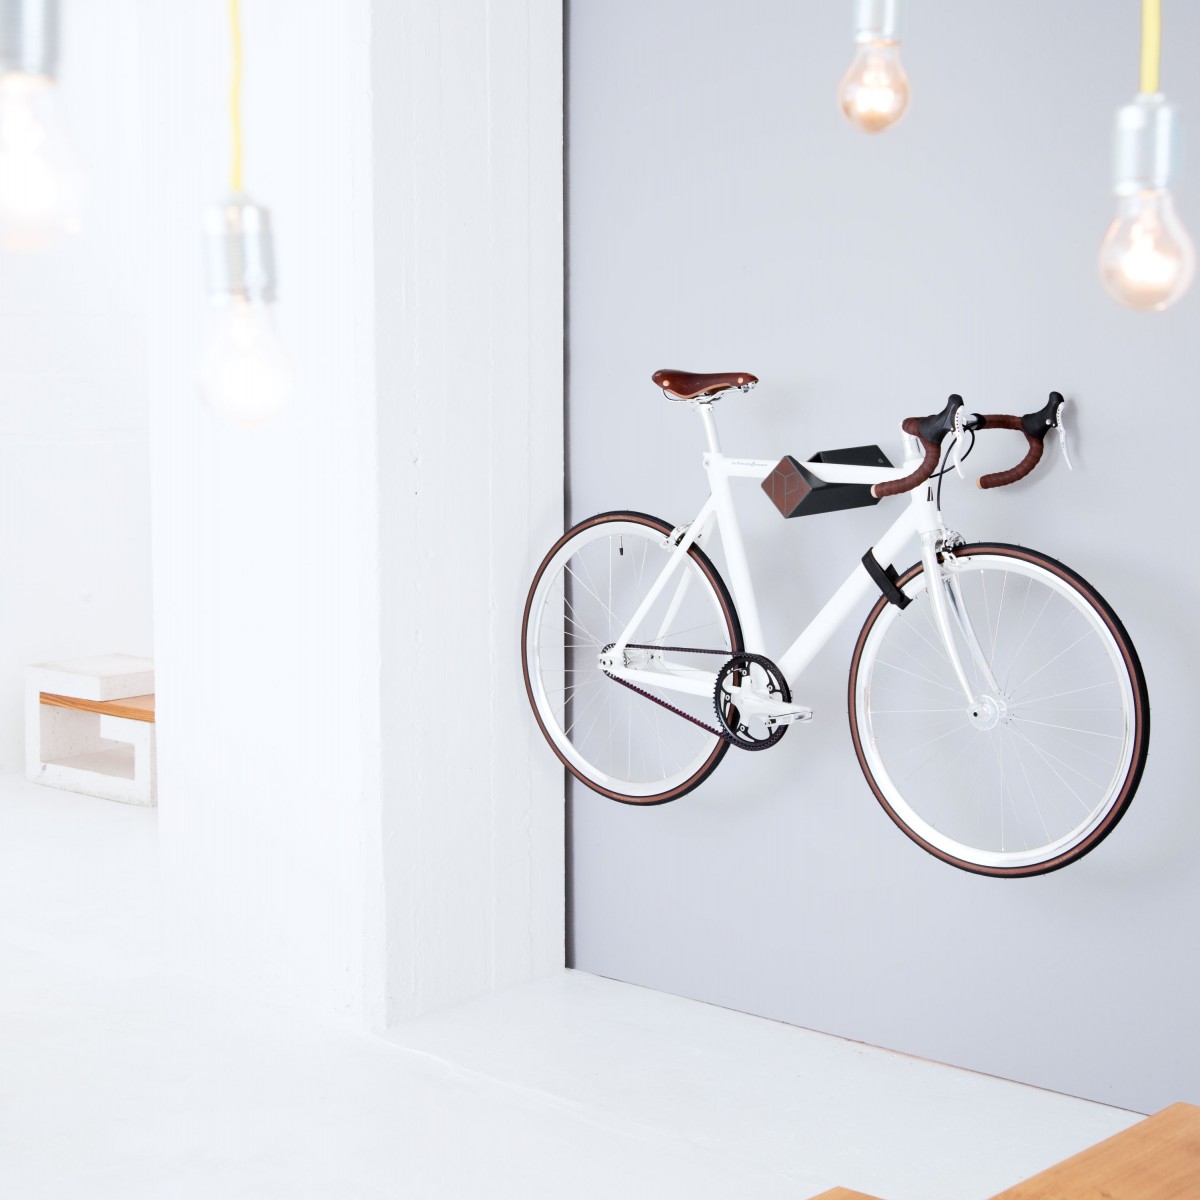 Stilvolle Design Fahrrad Wandhalterung | PARAX® D-RACK | für Rennrad, Hardtail, Cityrad & Tourenrad | Schwarz mit Kebony Holz